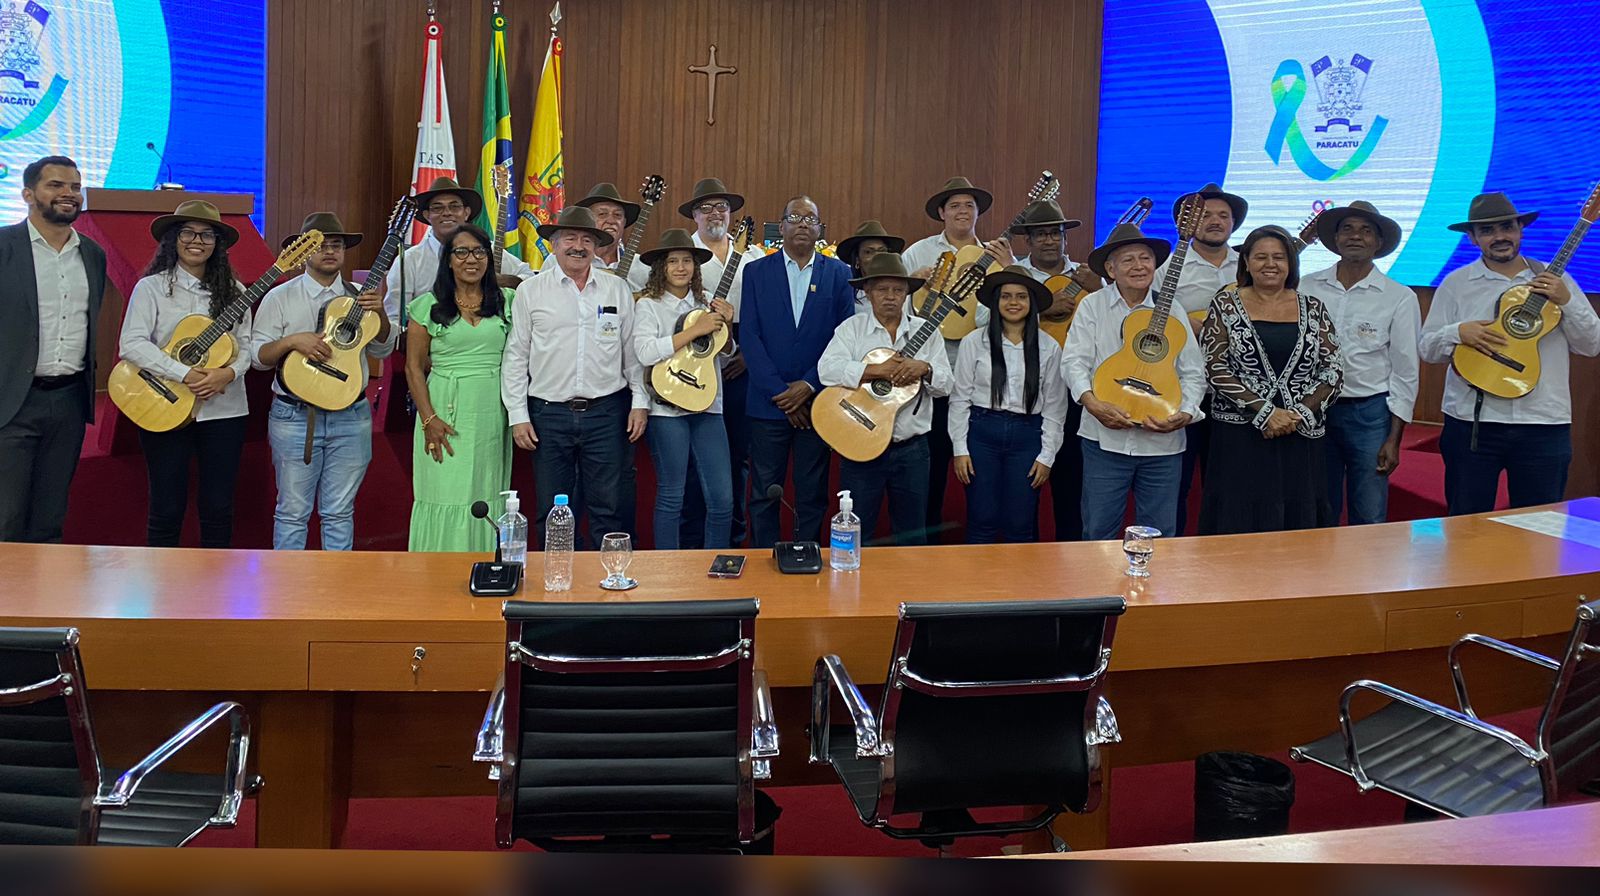 Aedos e Violeiros – Orquestra de Violas completa 20 anos e recebe Moção de Regozijo da Câmara Municipal